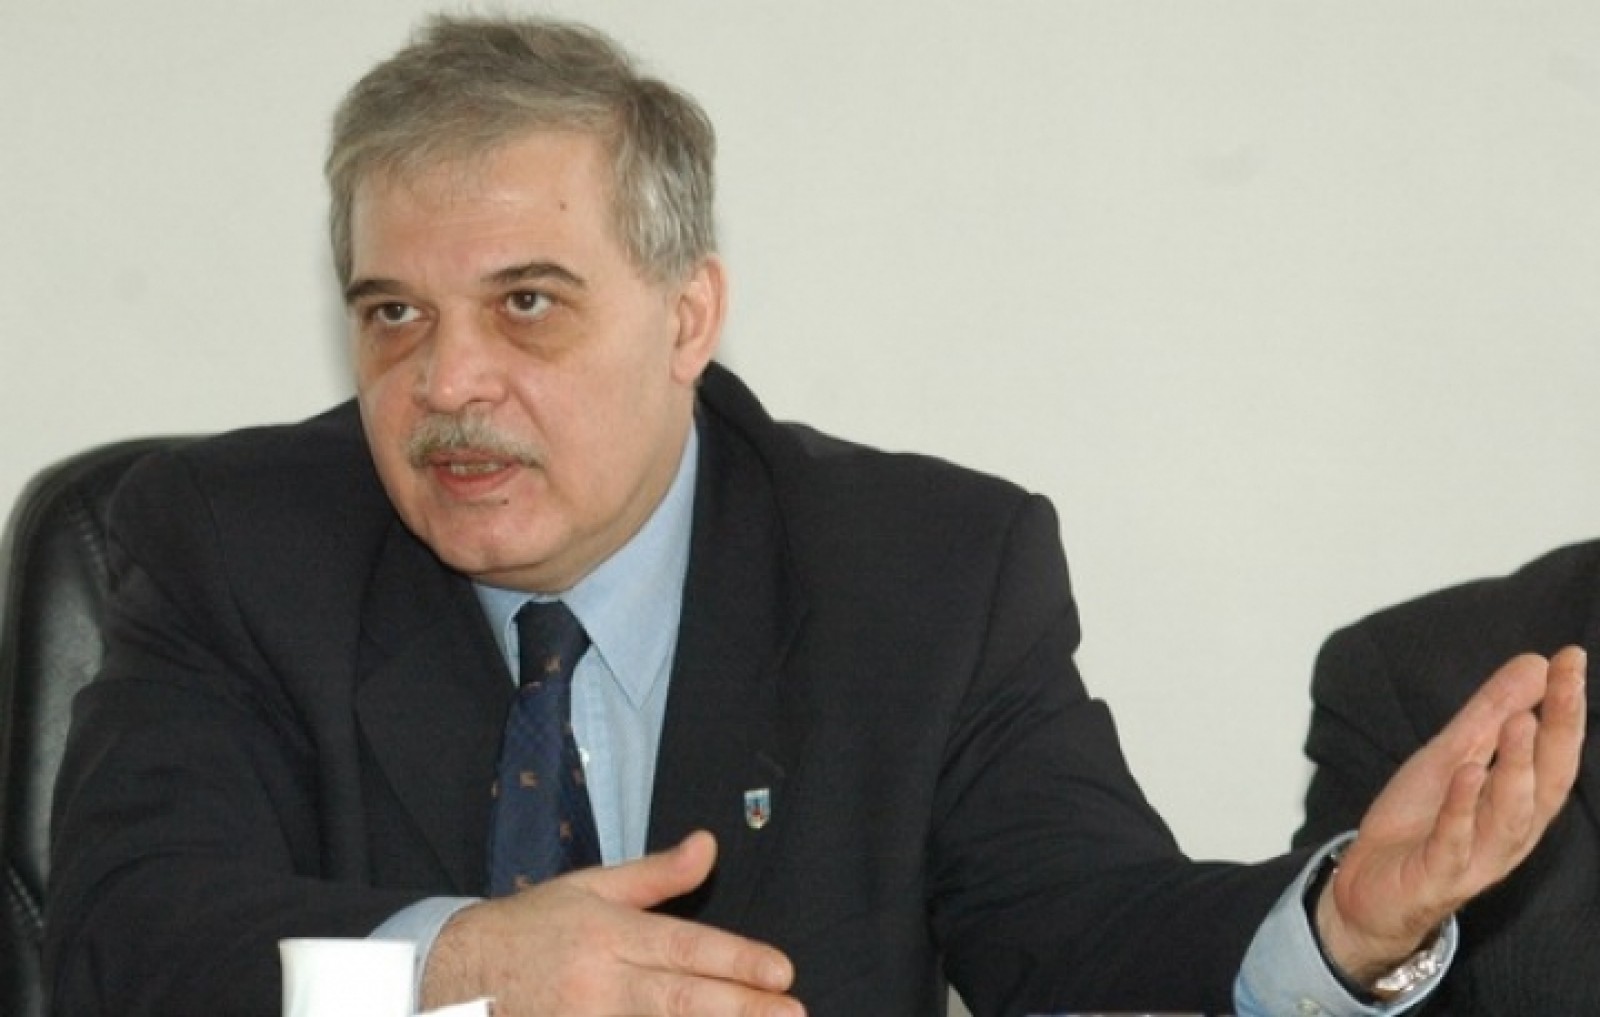 Fostul ministru al Educatiei, Alexandru Athanasiu este cercetat de DNA